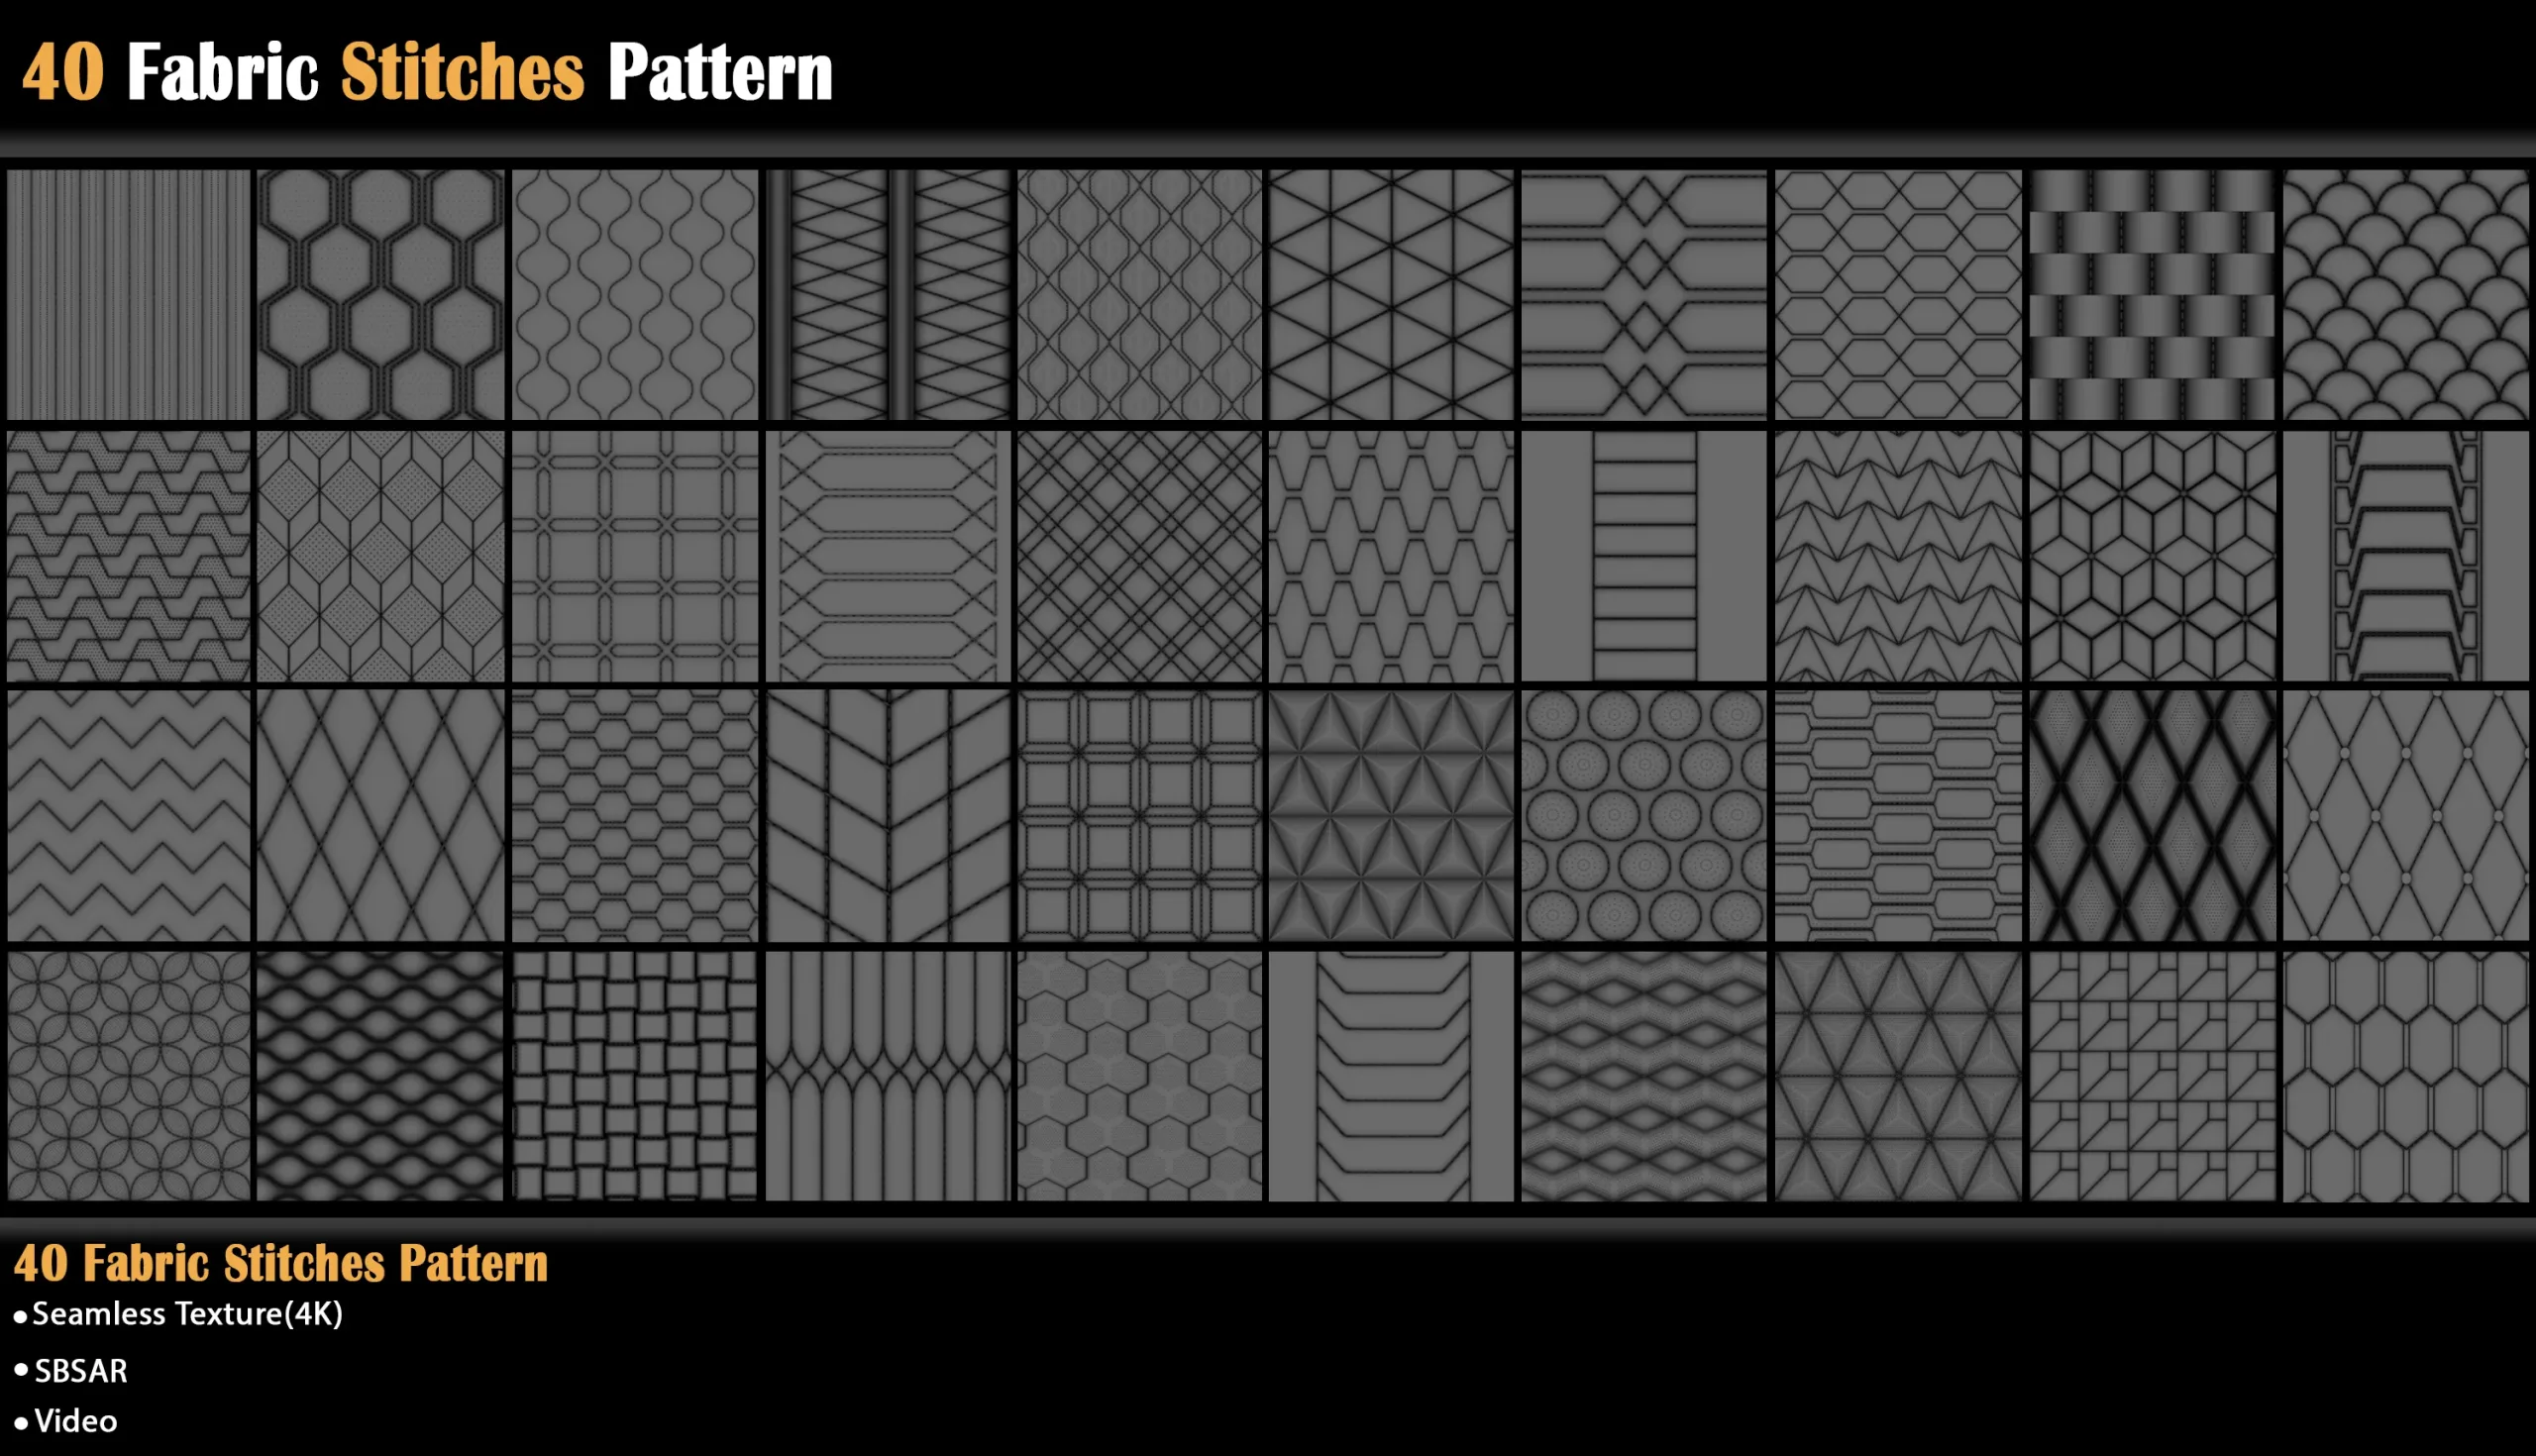 40 Fabric Stitches Pattern